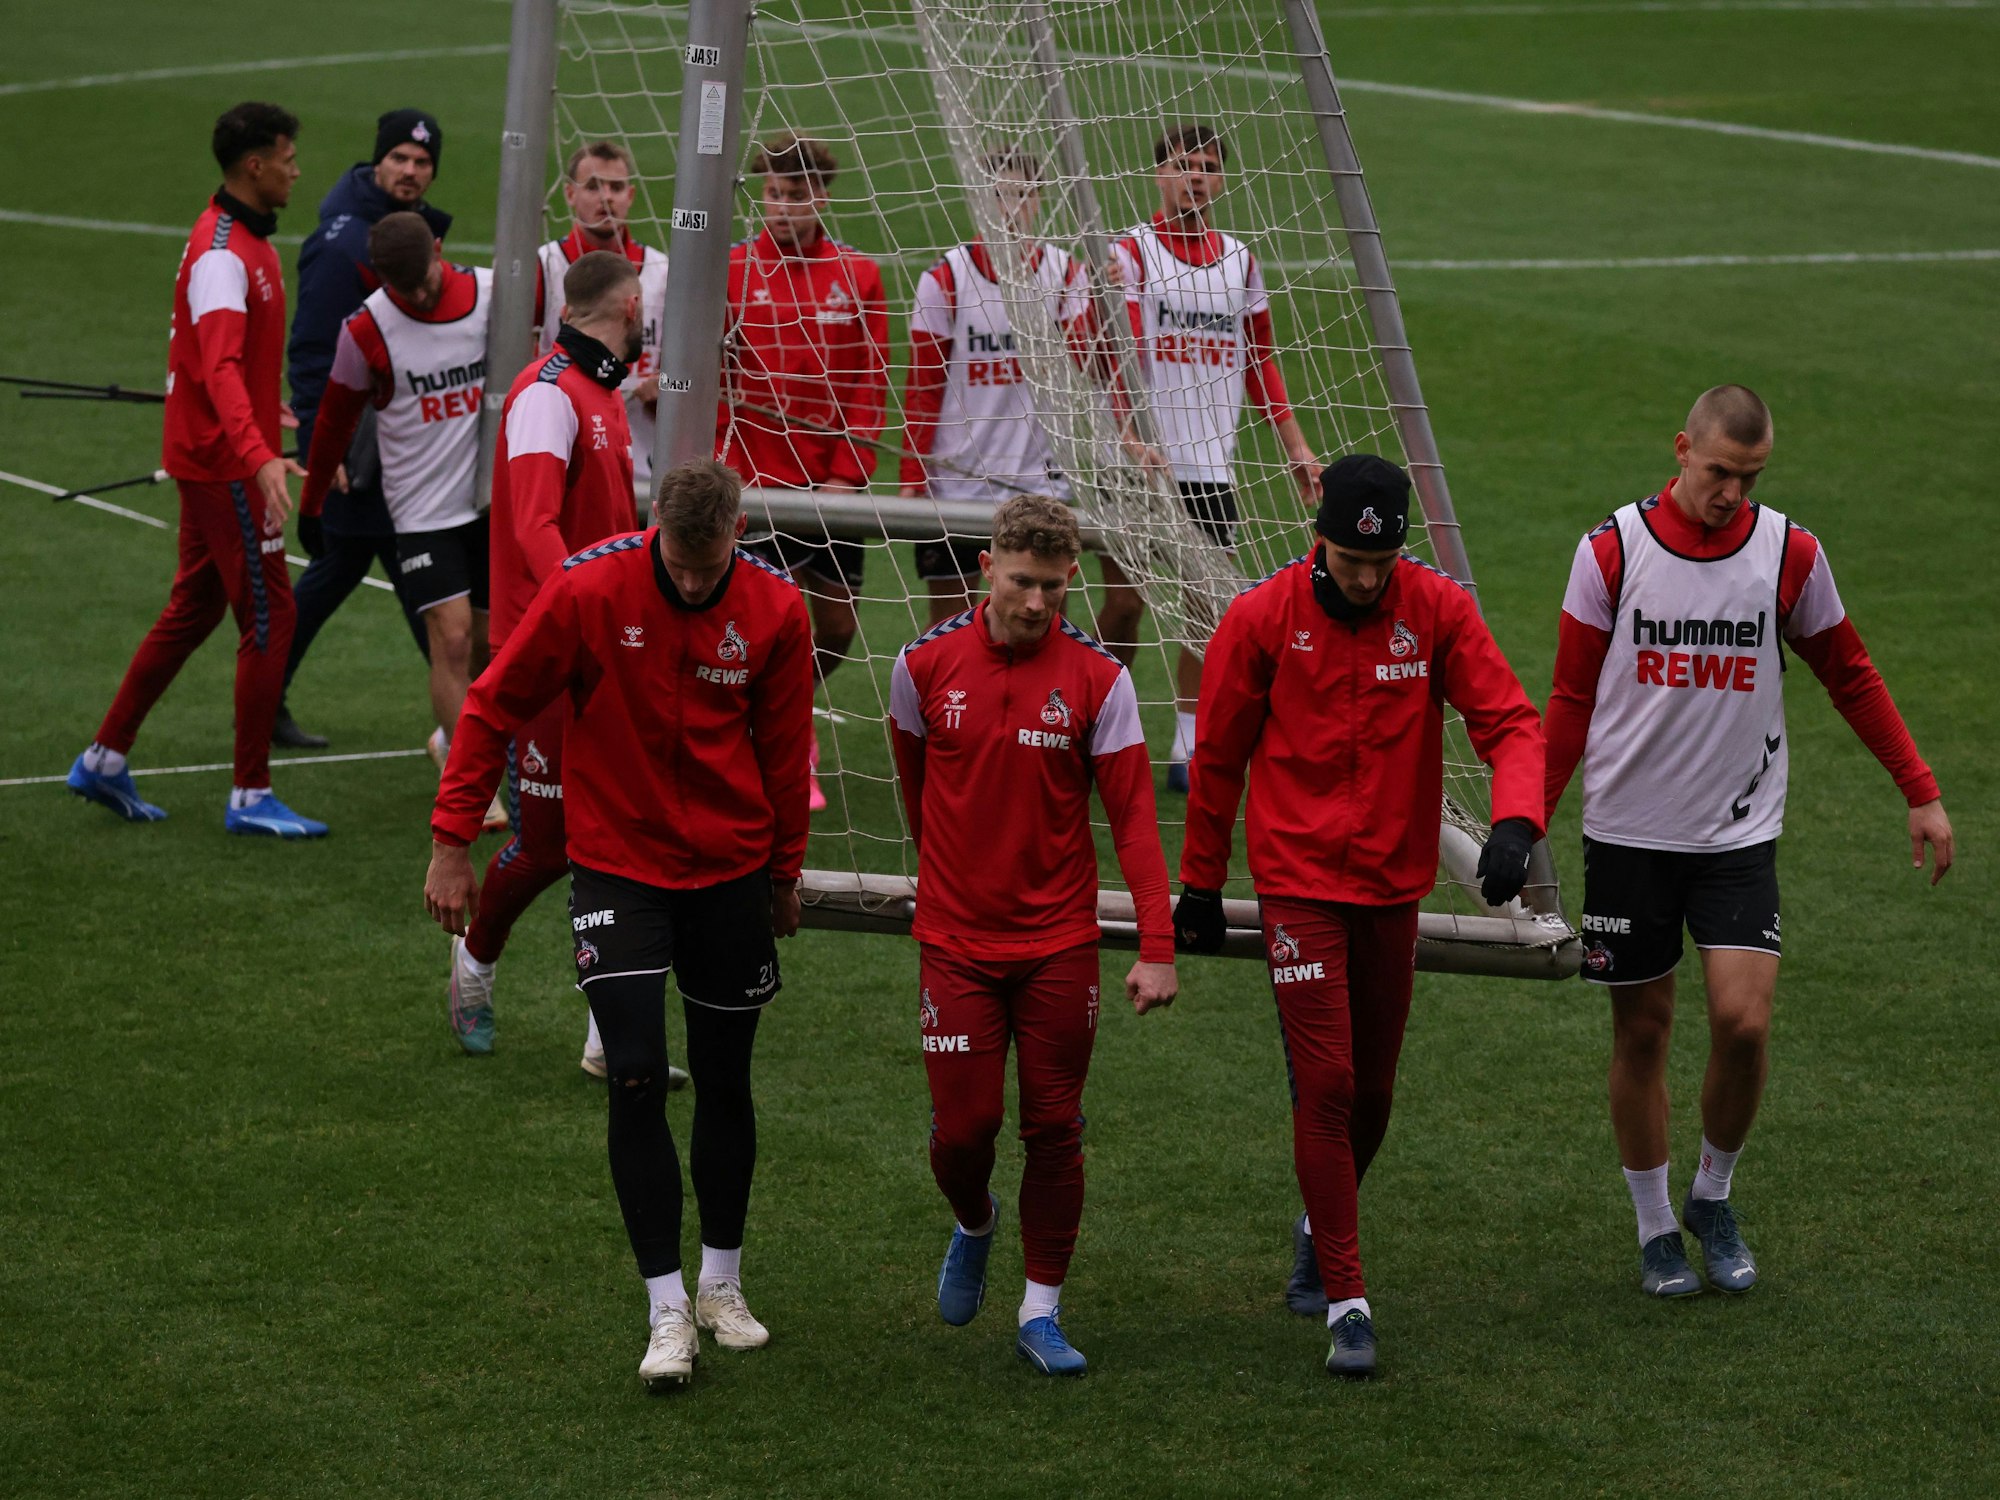 Training des 1. FC Köln im Franz-Kremer-Stadion am Geißbockheim in Köln: Die Spieler tragen ein Tor.